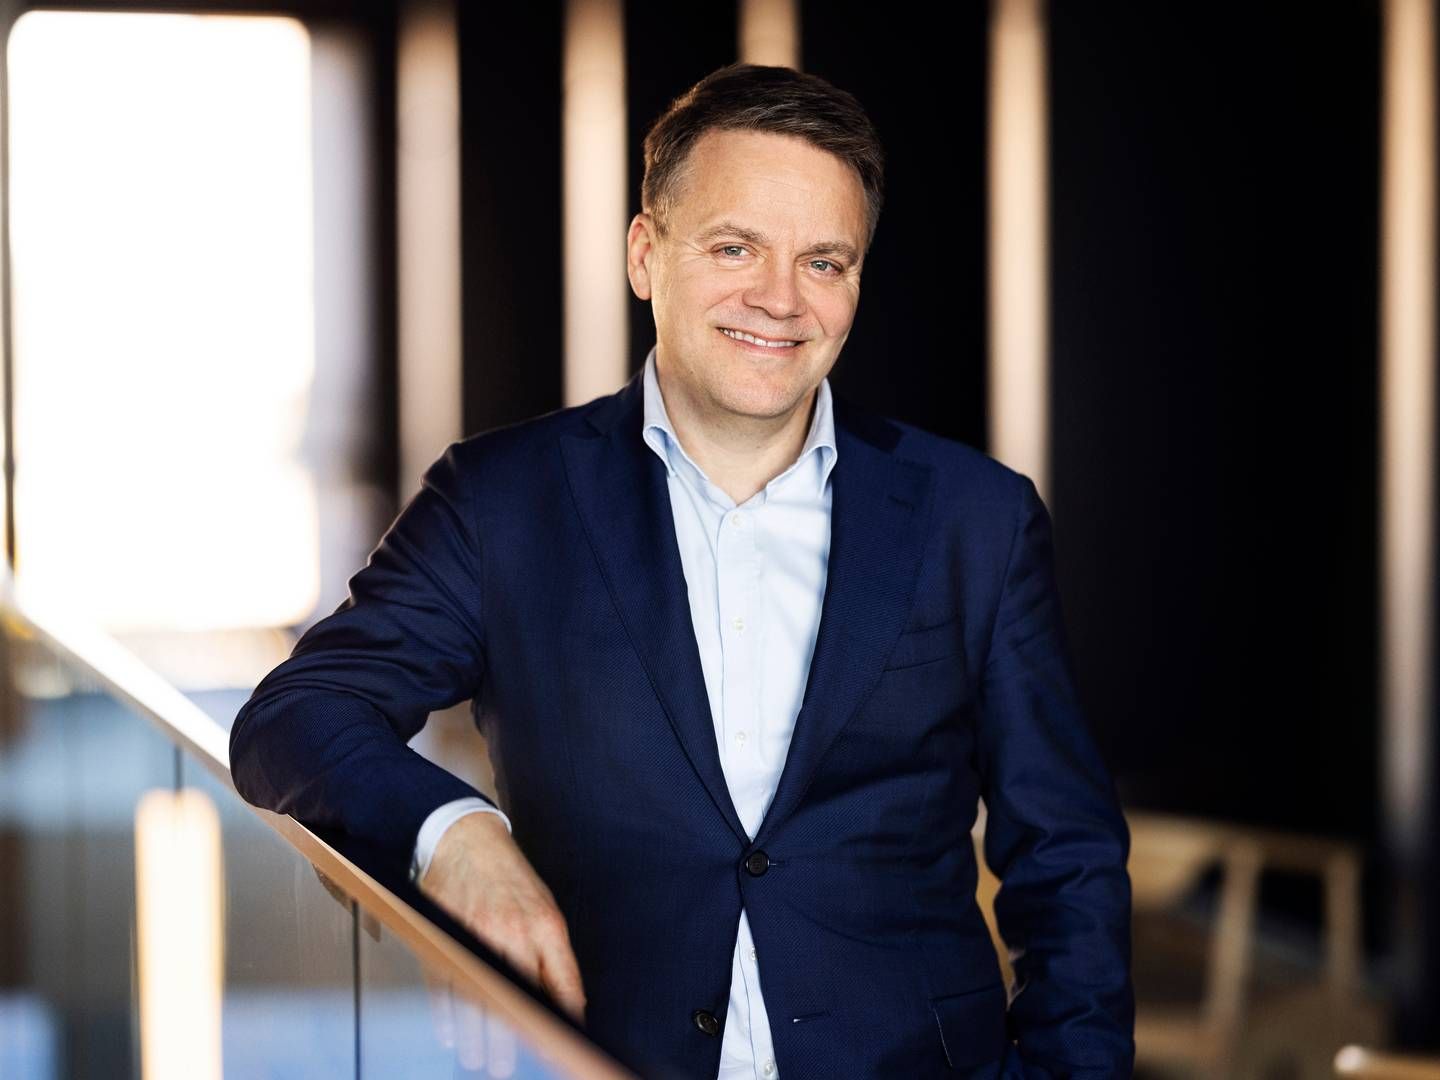 Martin Lippert er direktør i GlobalConnect, som, med tilskud fra EU, vil anlægge nyt fibernet mellem Norge og Sverige: ”Vi er taknemmelige for støtten fra EU til at medfinansiere dette projekt, som vil være et stærkt digitalt løft for hele regionen," siger han om finansieringen. | Foto: Pr